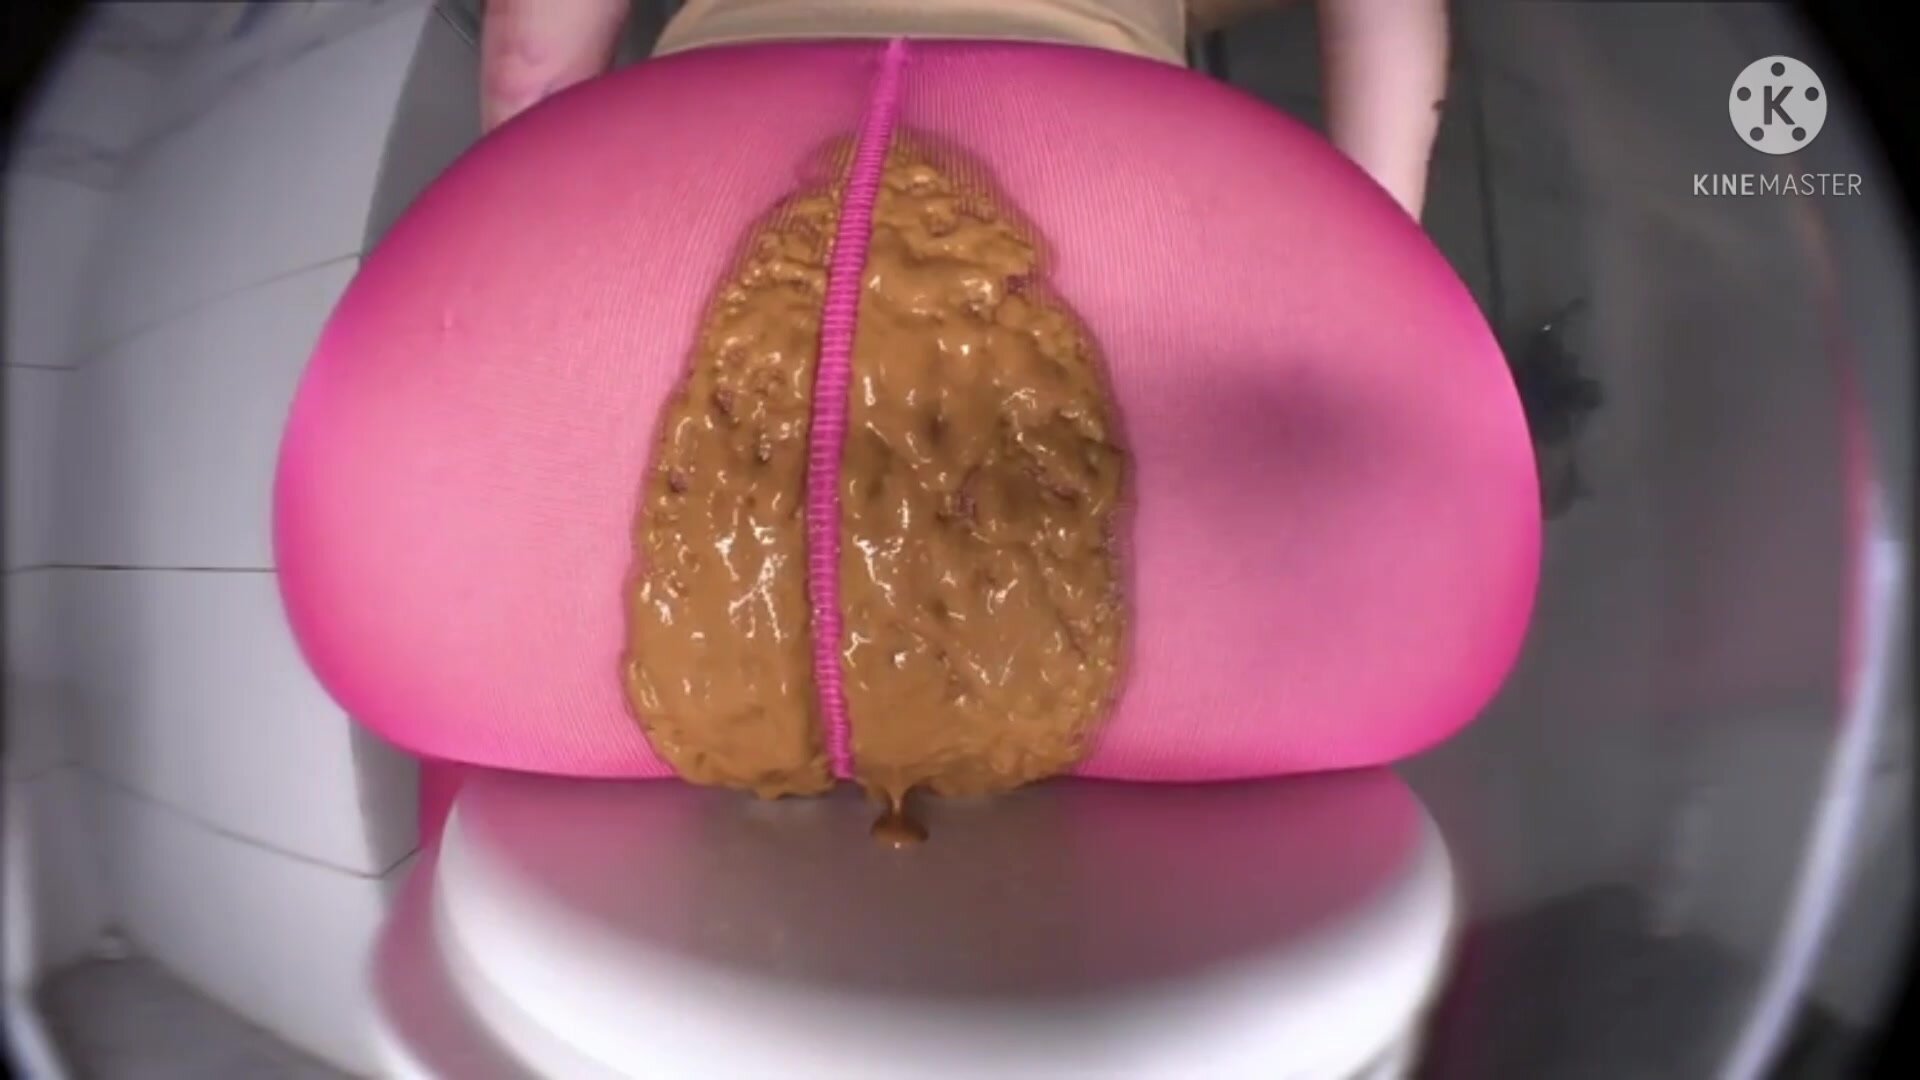 Big Ass Girls Porn - Huge ass girl has diarrhea in her pink leggings - ThisVid.com